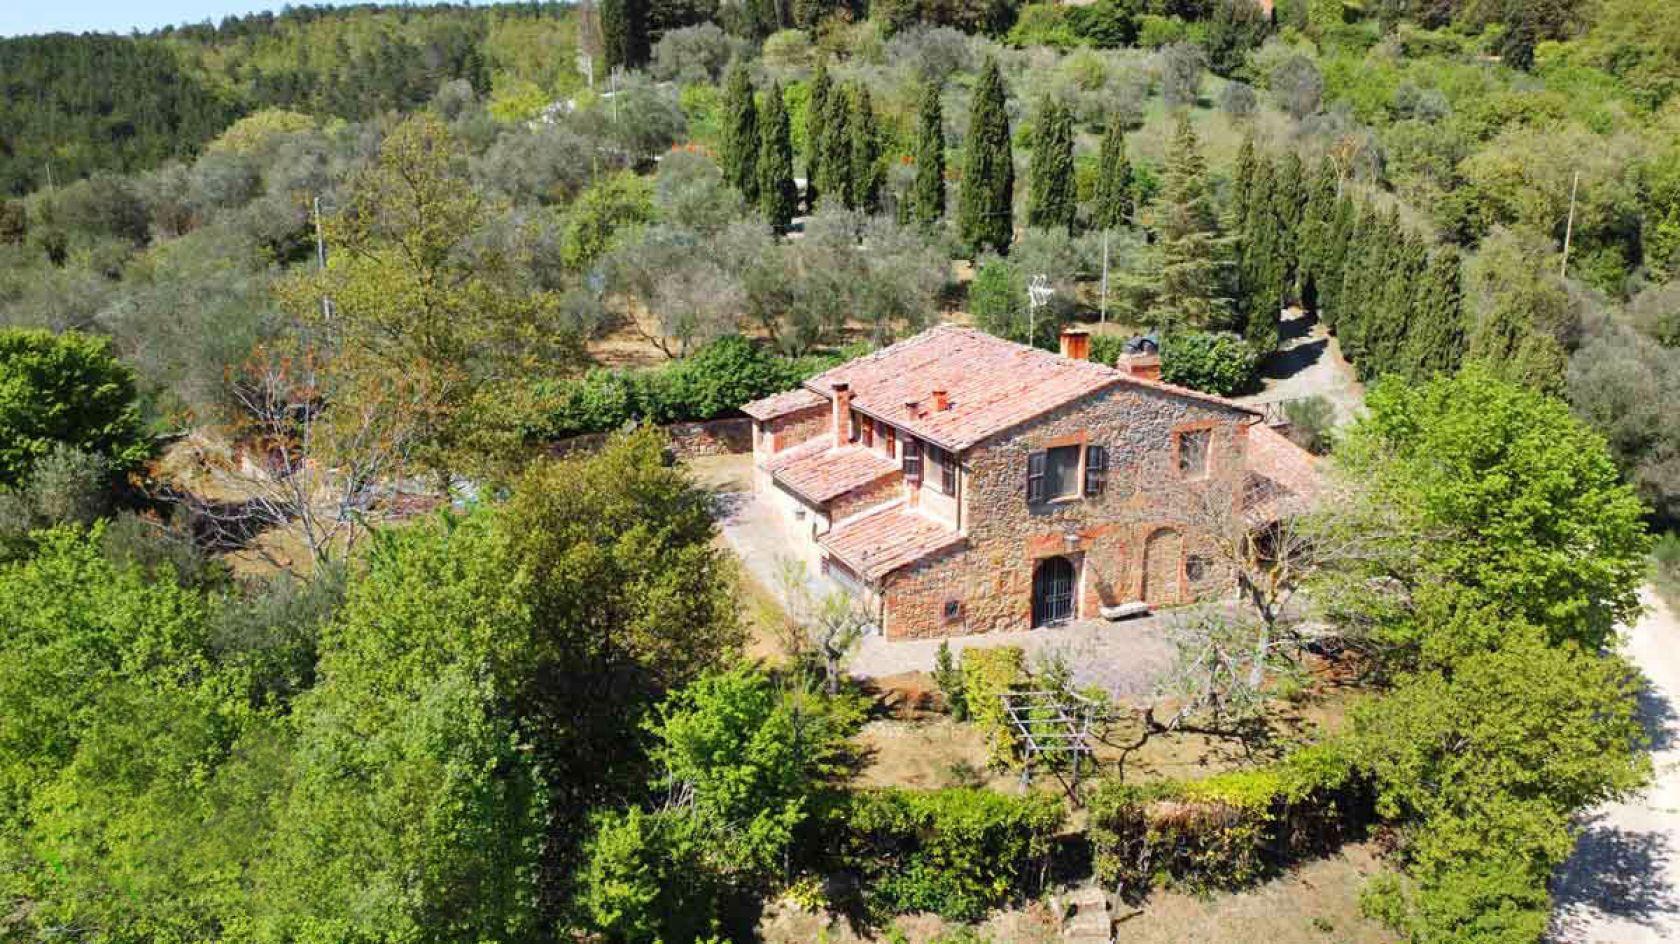 Toscana Immobiliare - Panoramico casale ristrutturato in vendita a Montepulciano, circondato da un ampio parco e oliveto